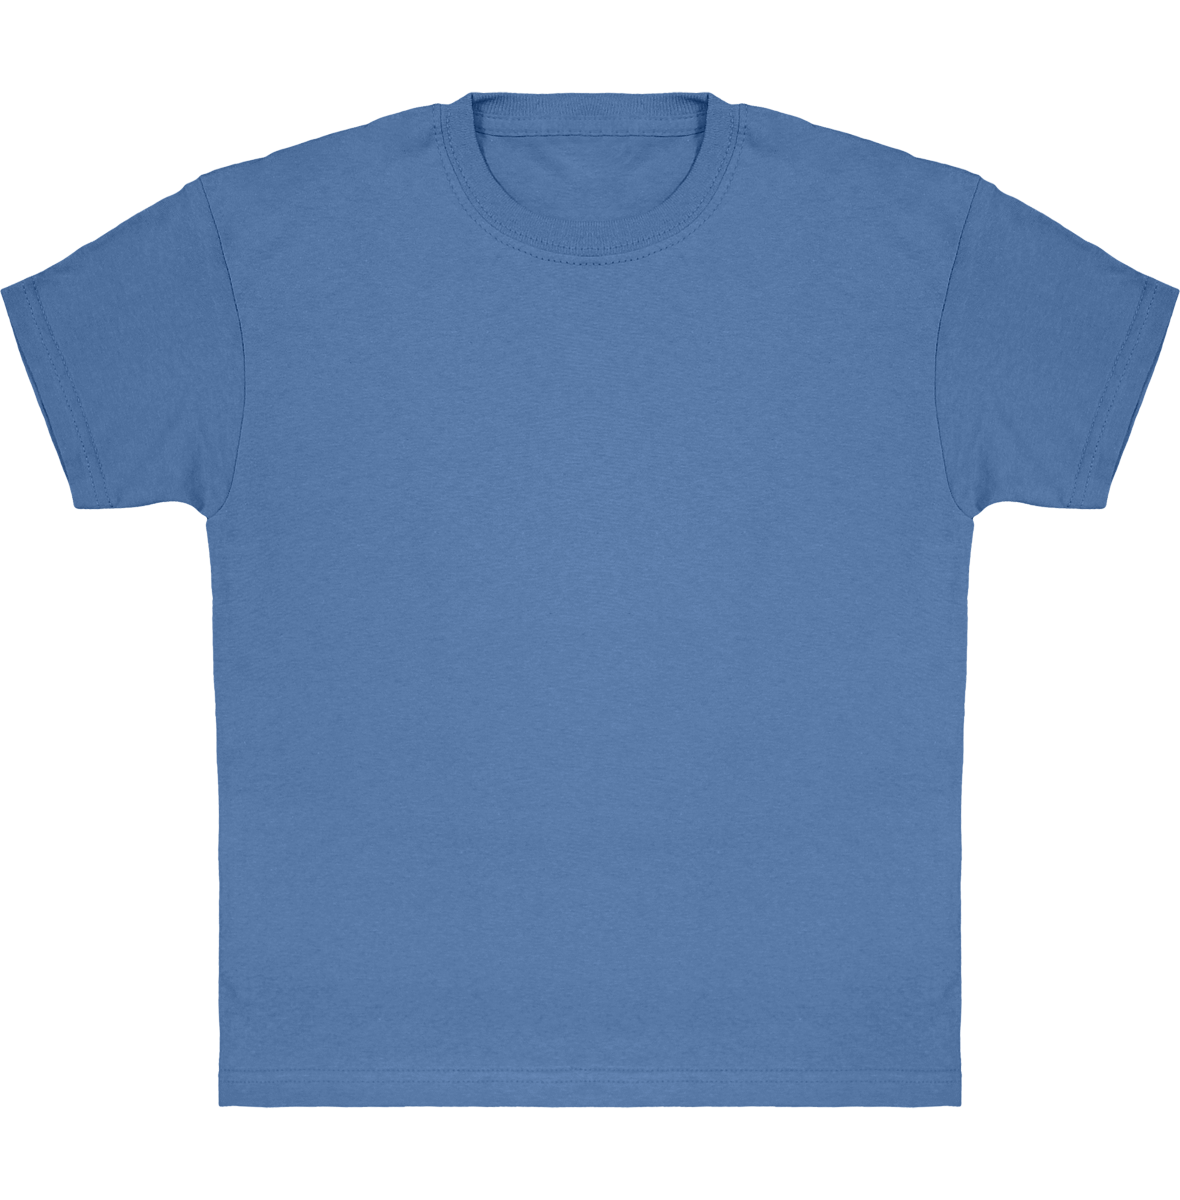 Camiseta Clásica De Niño Personalizada En Algodón 100% Azure Blue